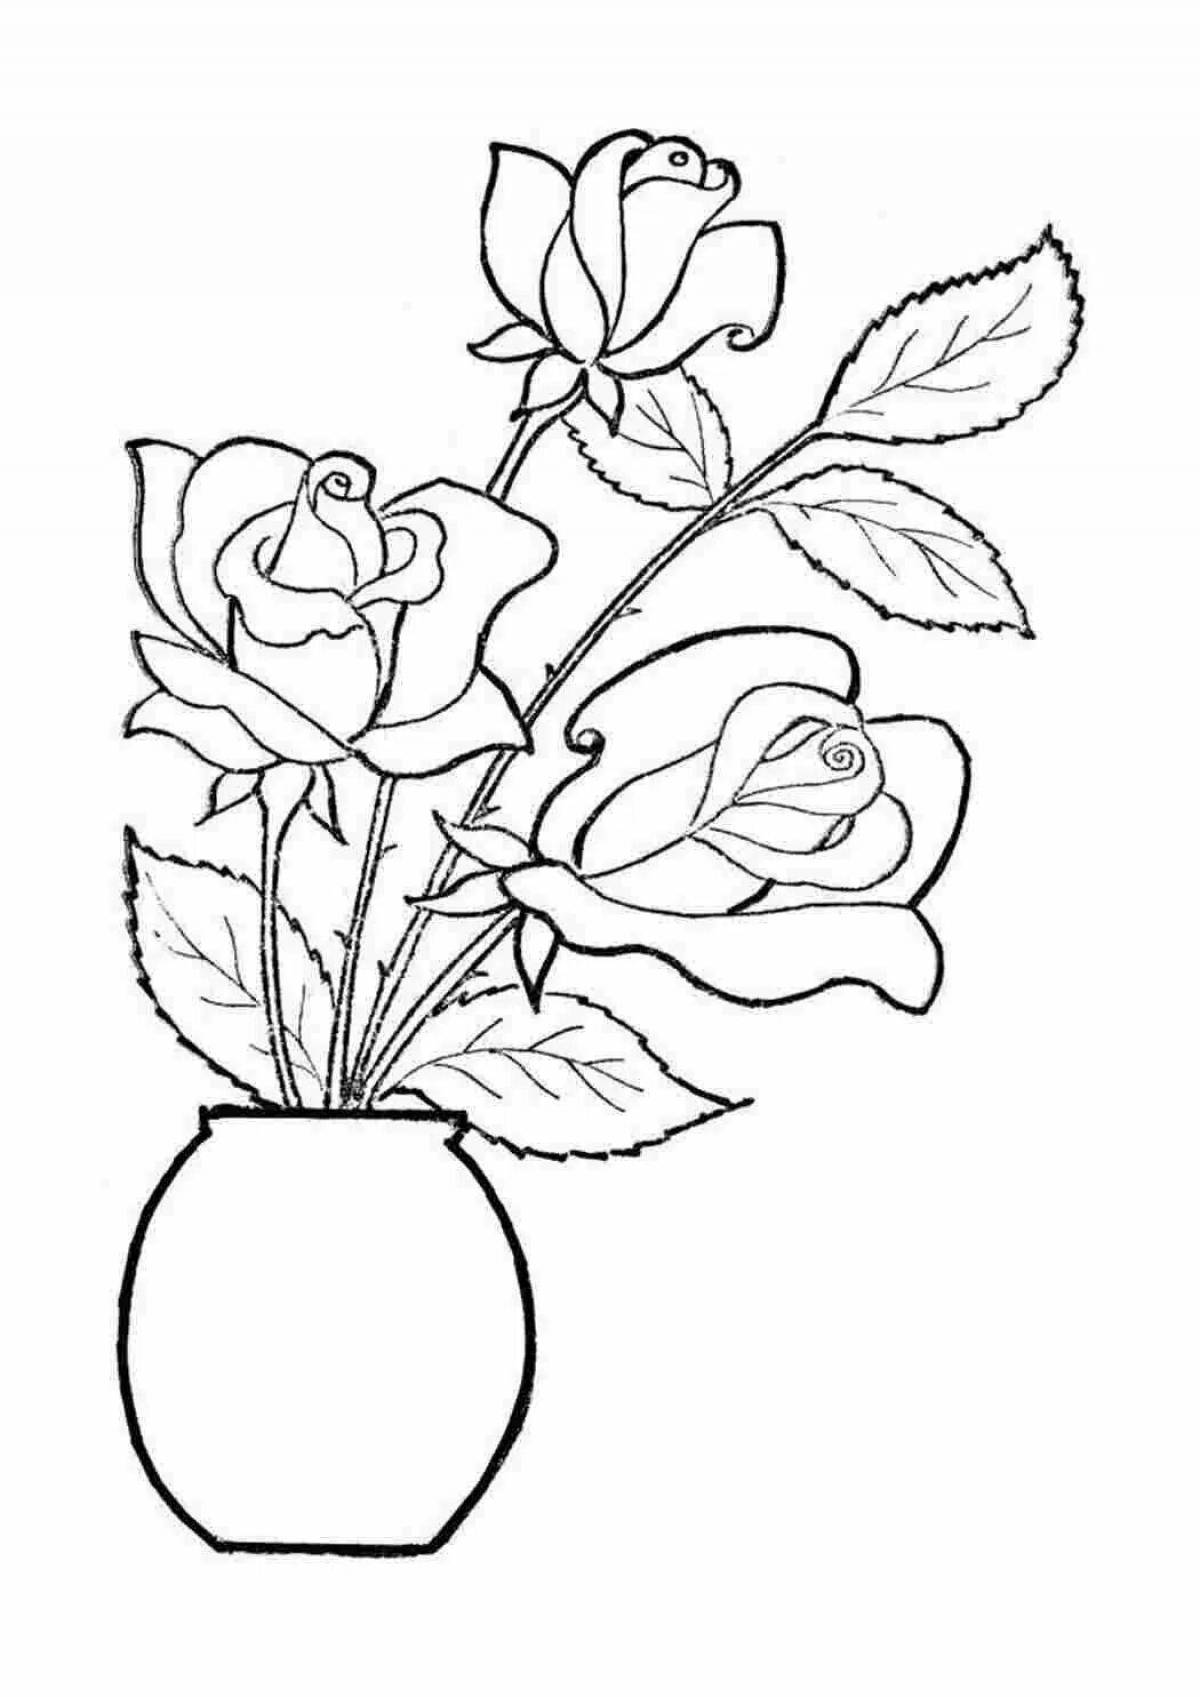 Rose flowers in vase #6